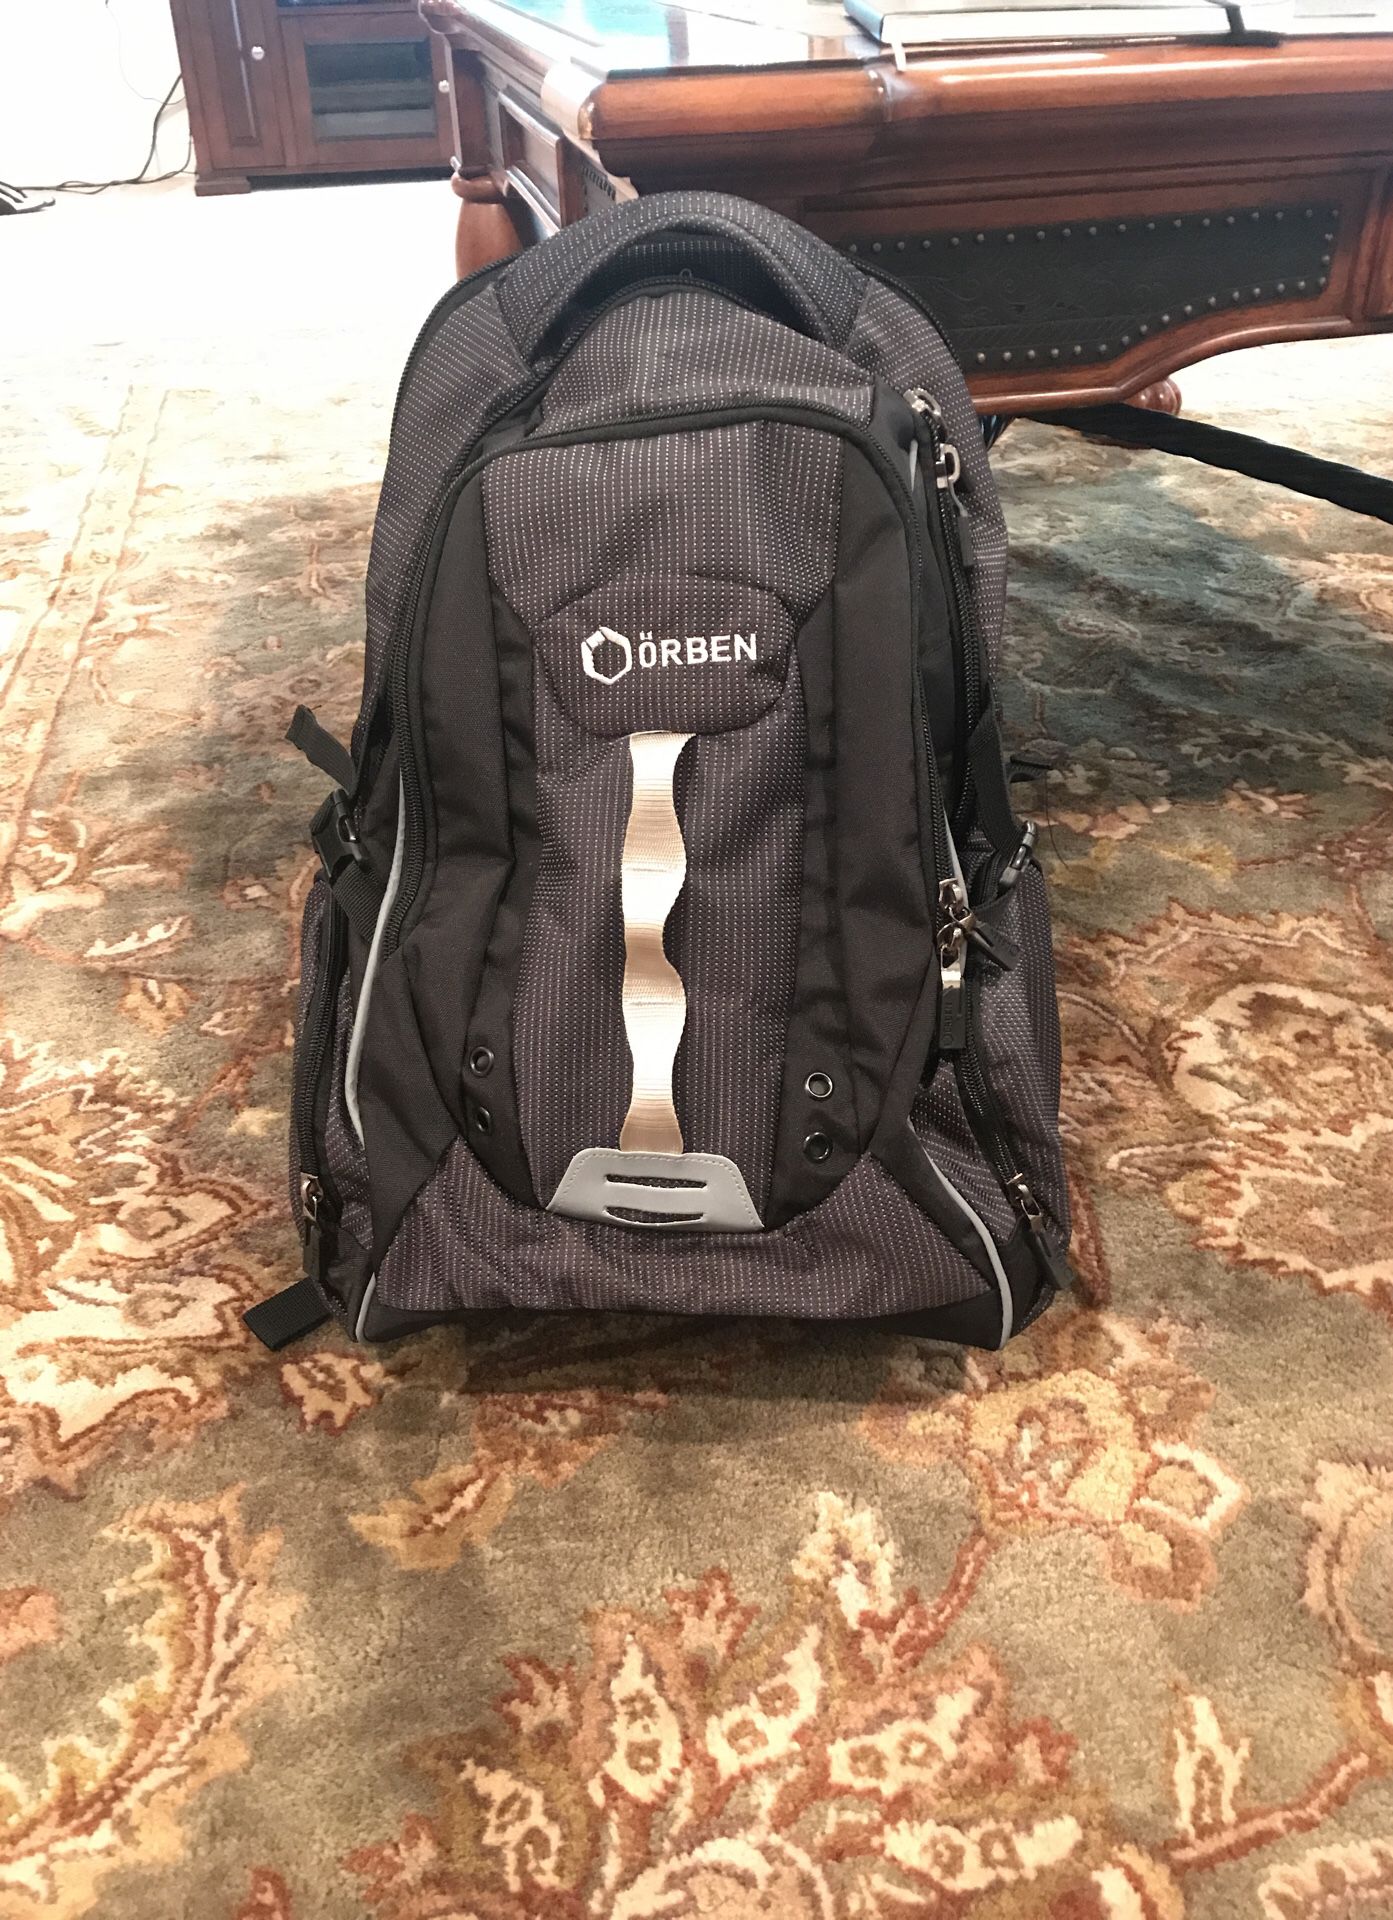 Orben trooper travel backpack